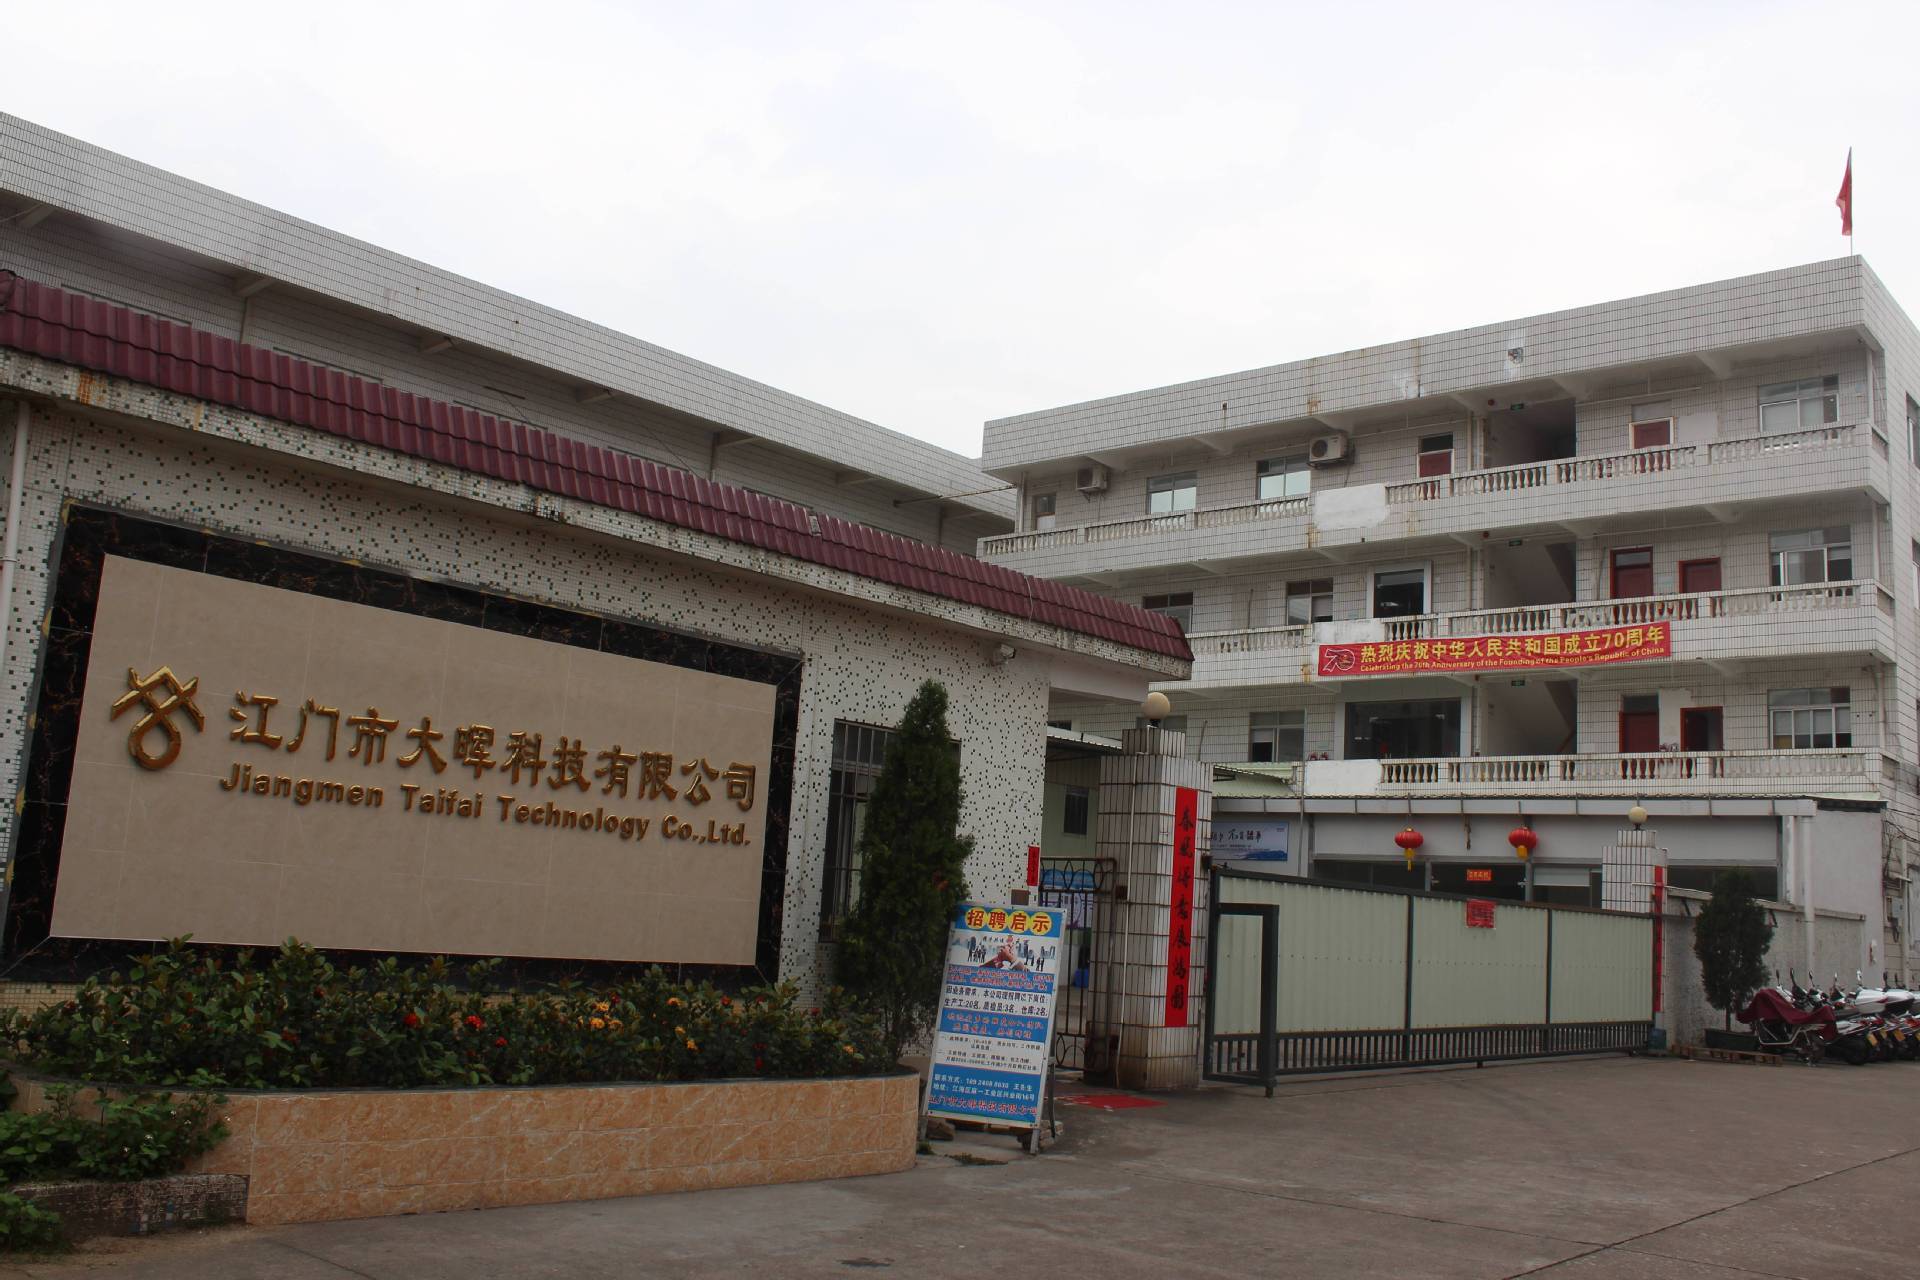   Jiangmen Dahui Technology Co., Ltd